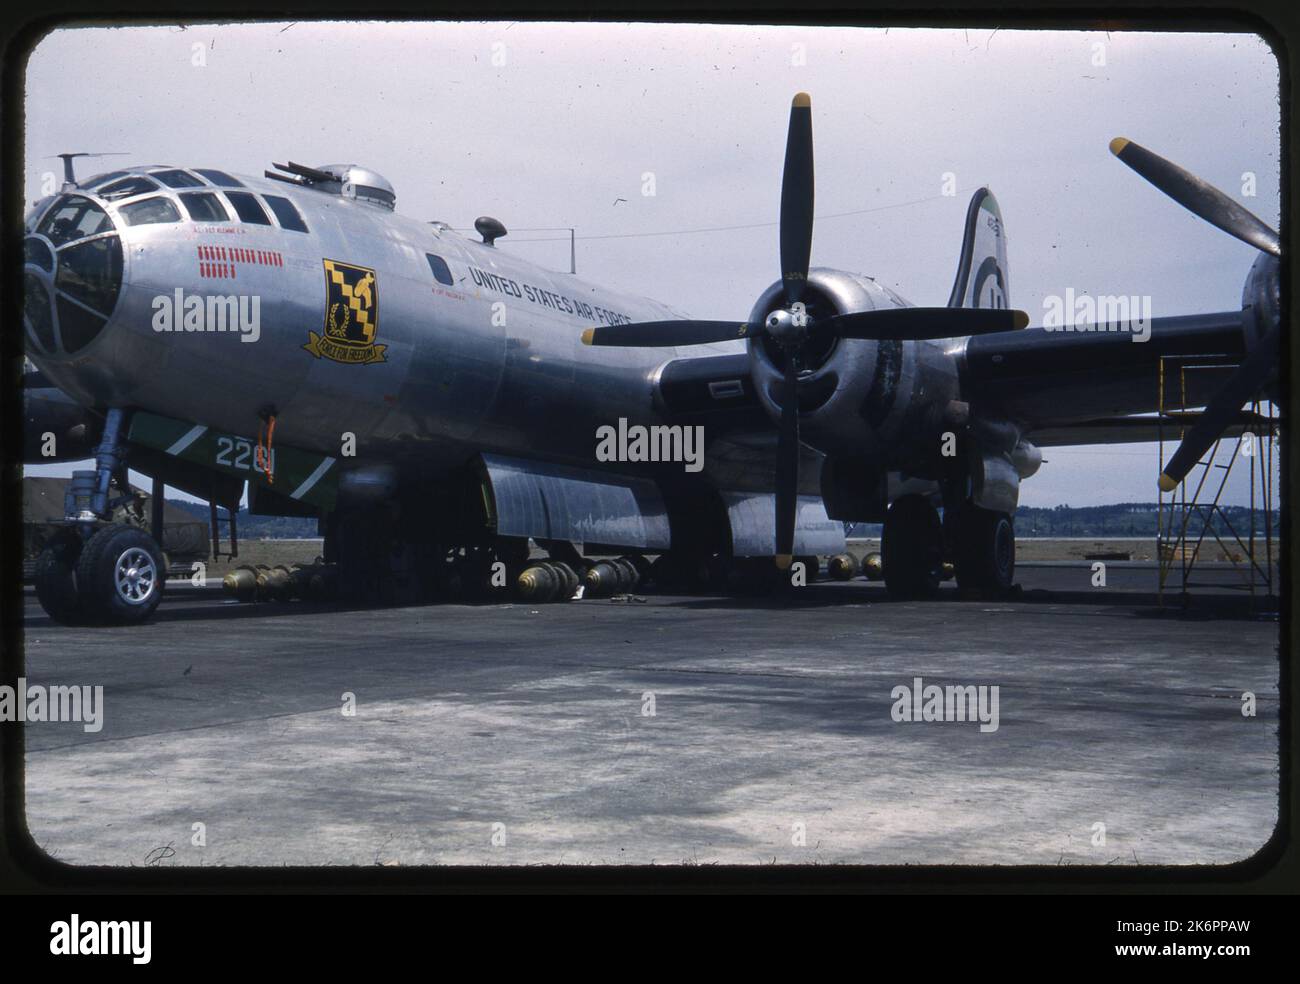 Vista frontal izquierda de tres cuartos de un Boeing B-29 Superfortress con bombas sentadas debajo del avión. El arte de la nariz incluye el apodo 'Fuerza para la Libertad' con el símbolo, y el número de misiones de bomba representadas como bombas. Vista frontal izquierda de tres cuartos de un Boeing B-29 Superfortress con bombas sentadas debajo del avión. El arte de la nariz incluye el apodo 'Fuerza para la Libertad' con el símbolo, y el número de misiones de bomba representadas como bombas. Foto de stock